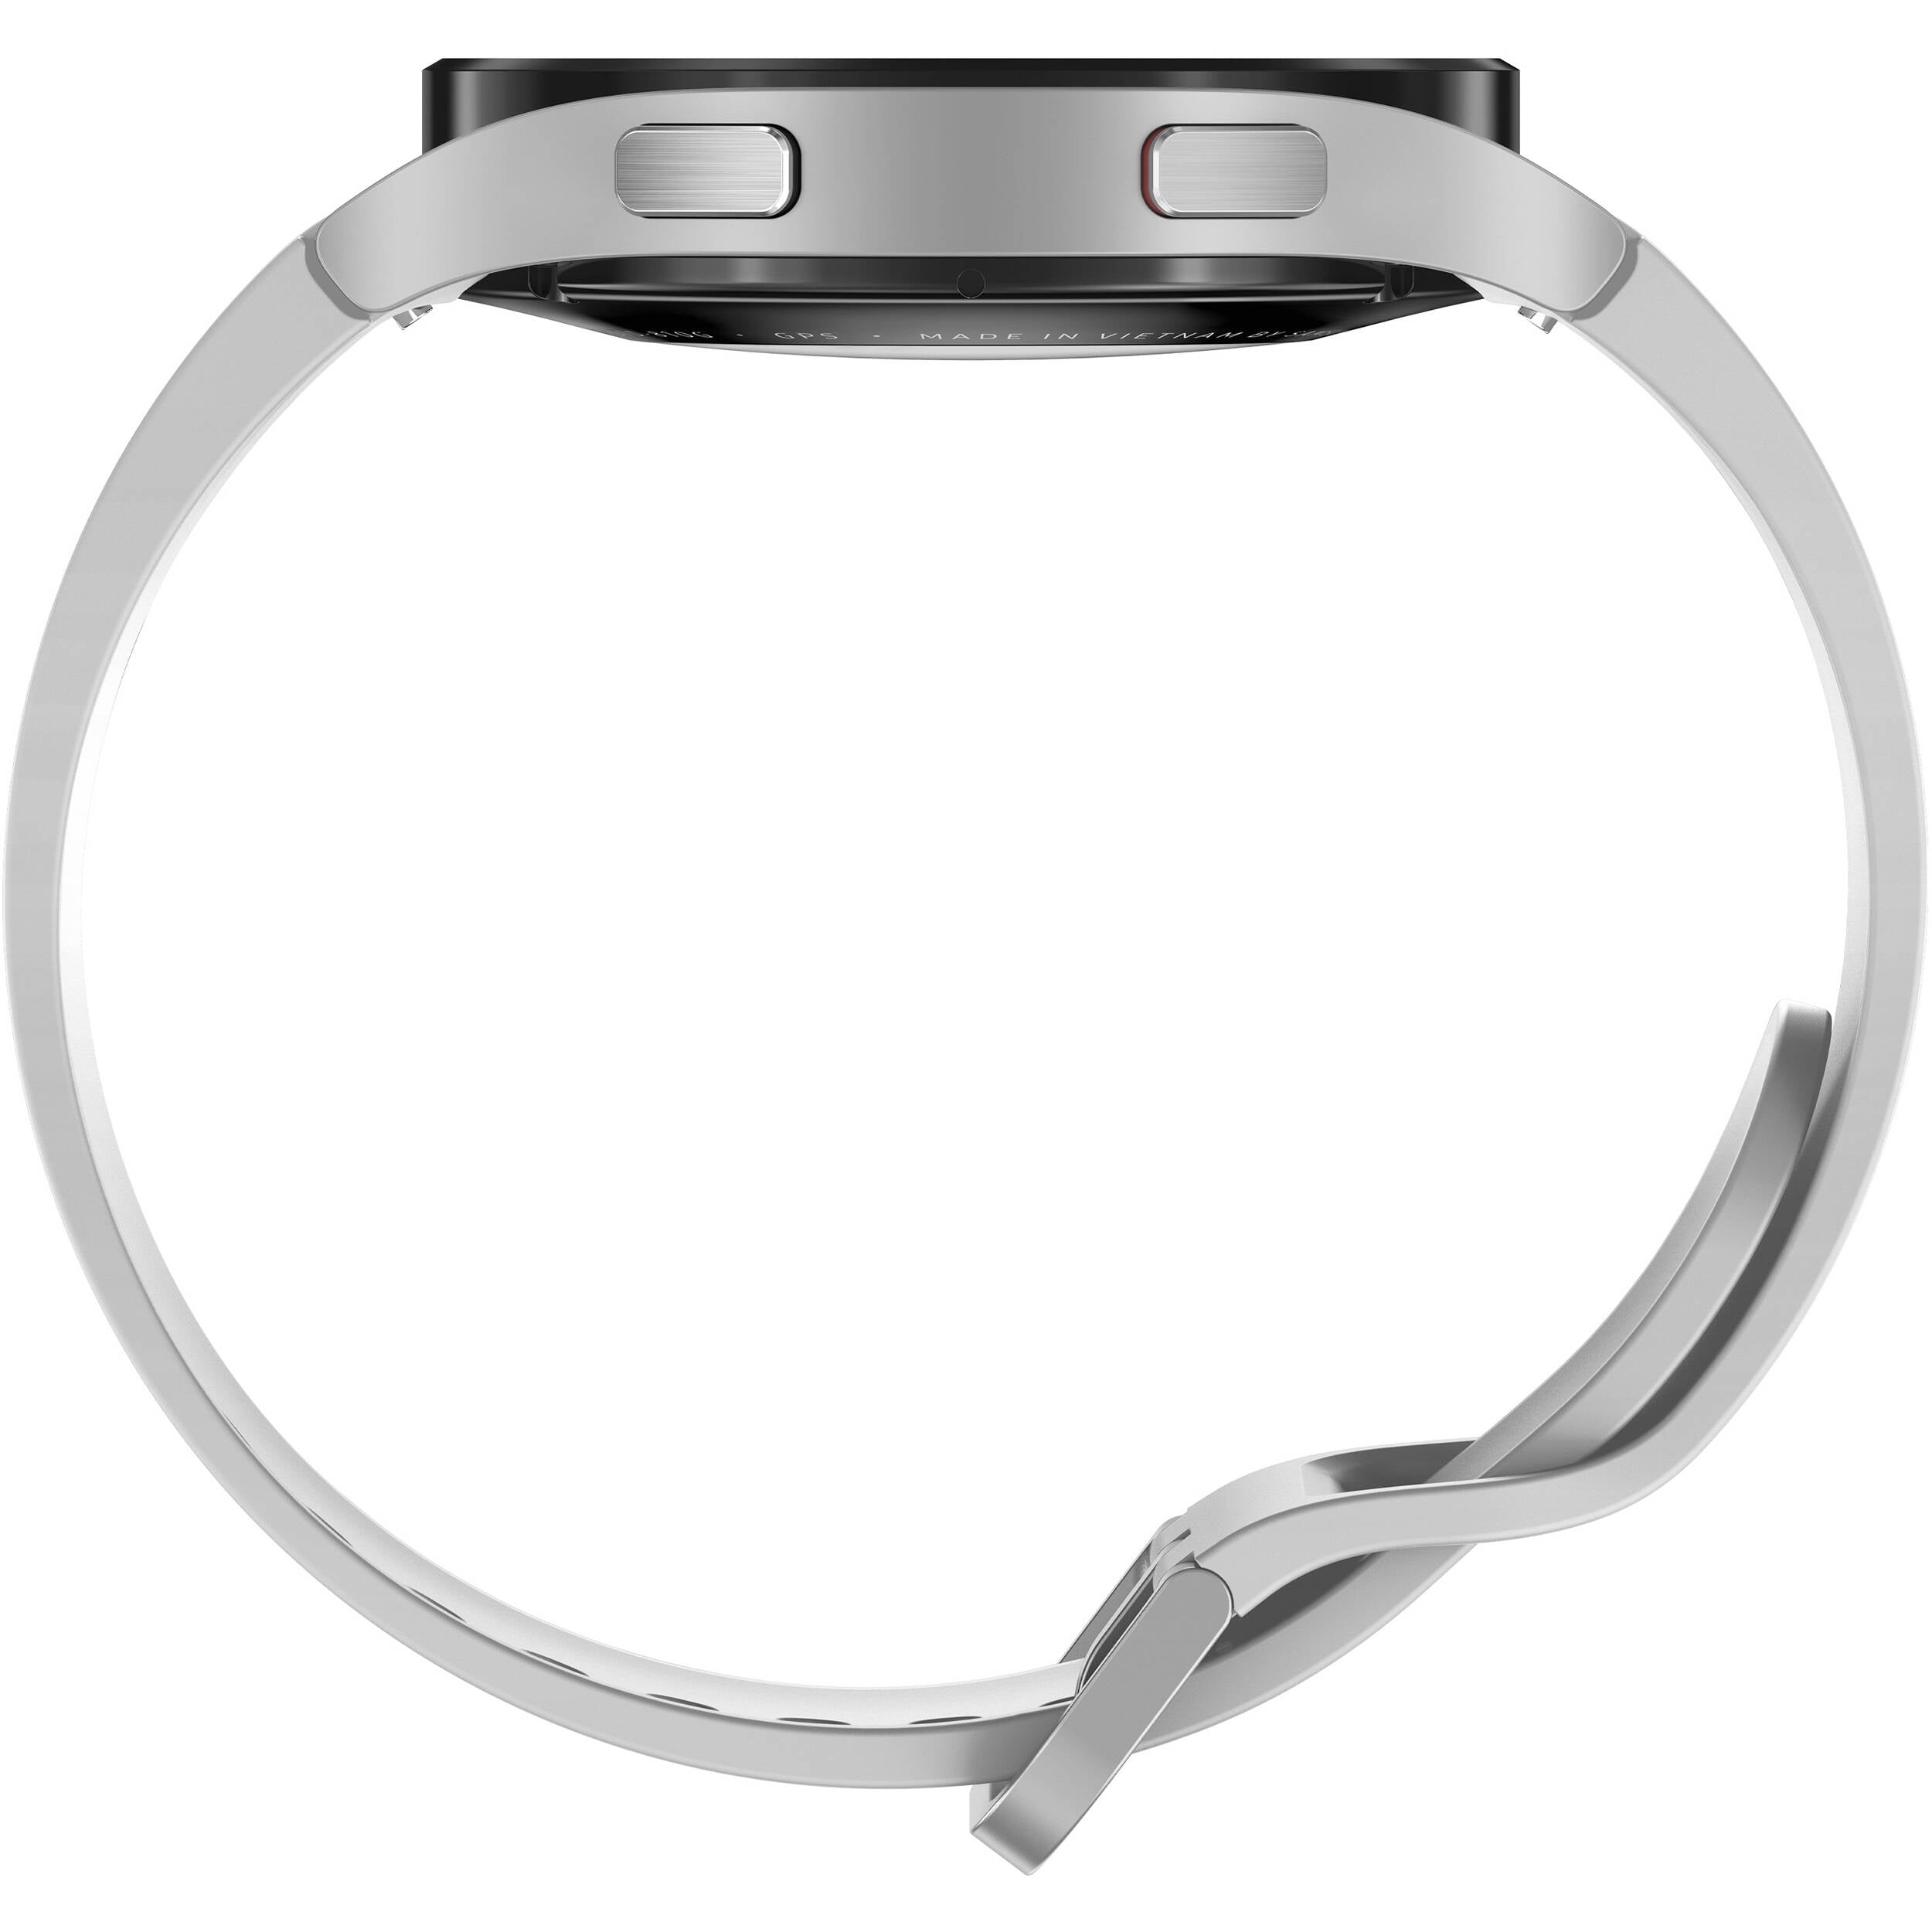 Samsung SM-R875UZSAXAA Galaxy Watch4 44mm 4G LTE Silver - Certified Refurbished